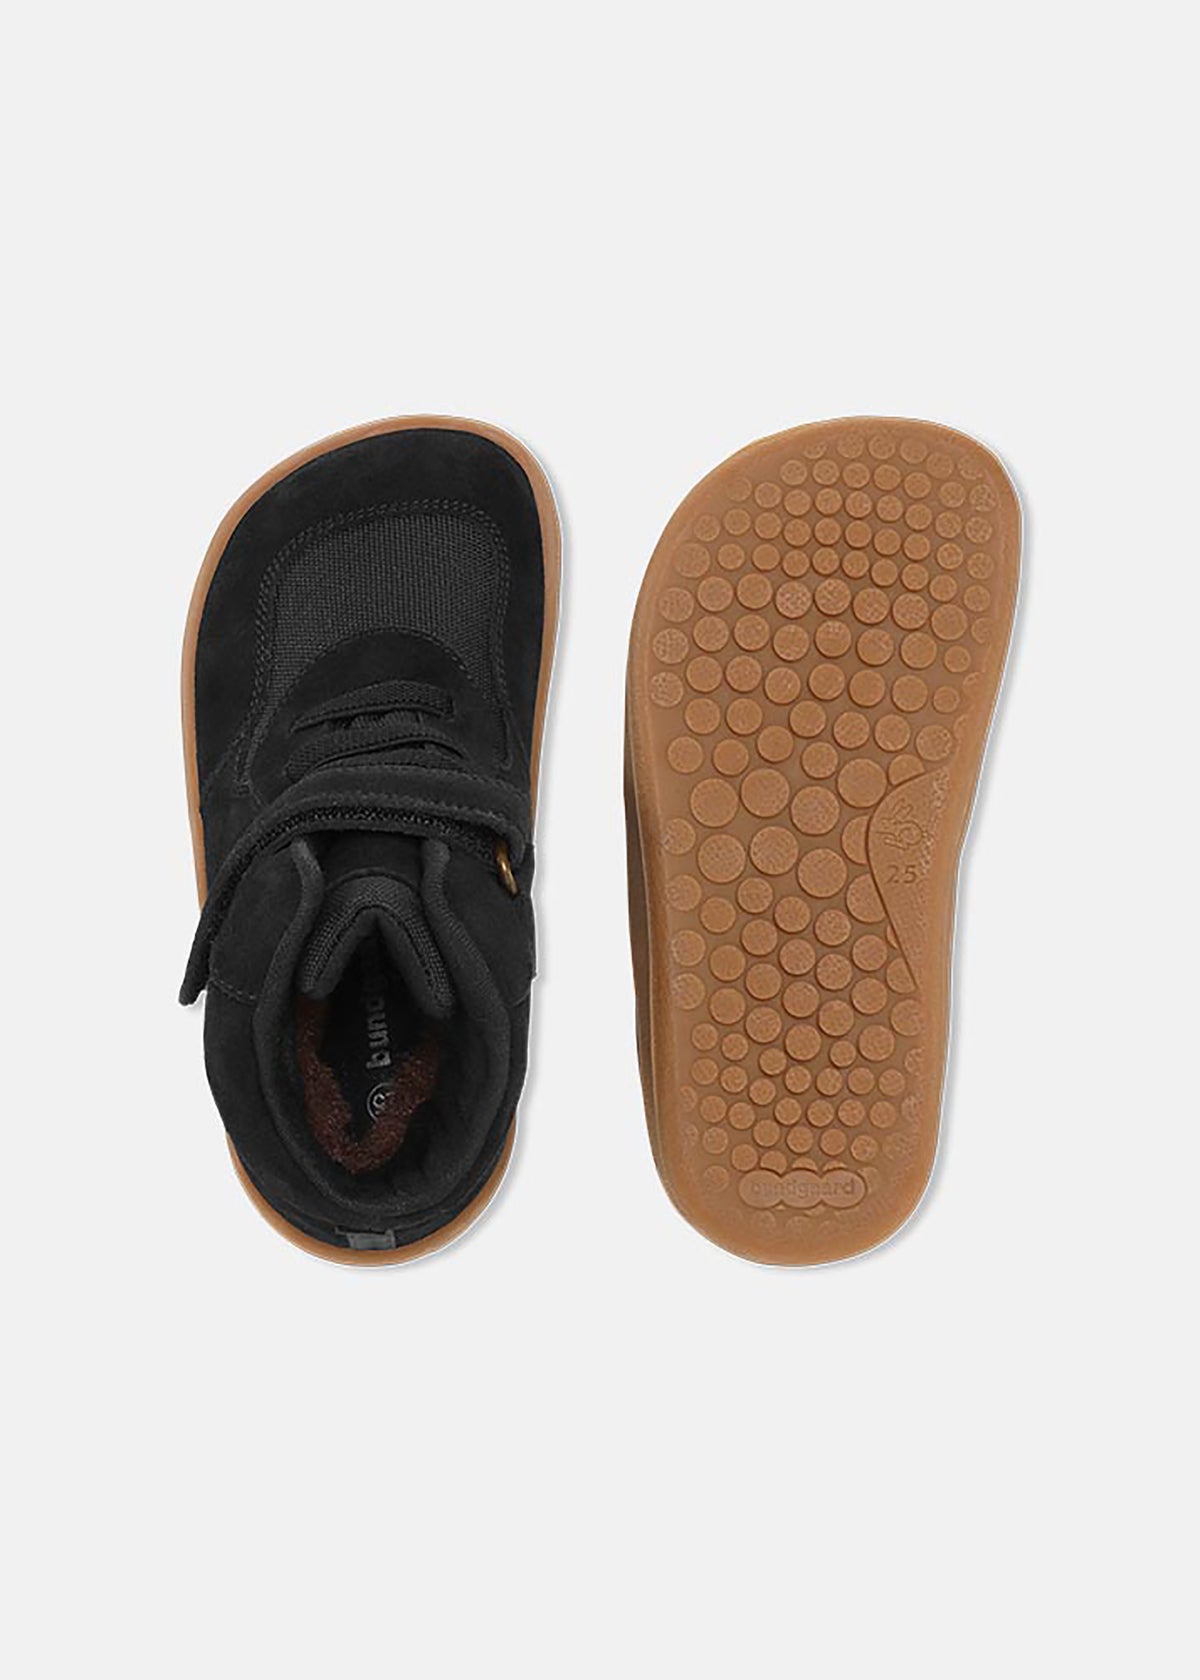 Children's winter shoes with TEX membrane - Brooklyn, black, Bundgaard Zero Heel